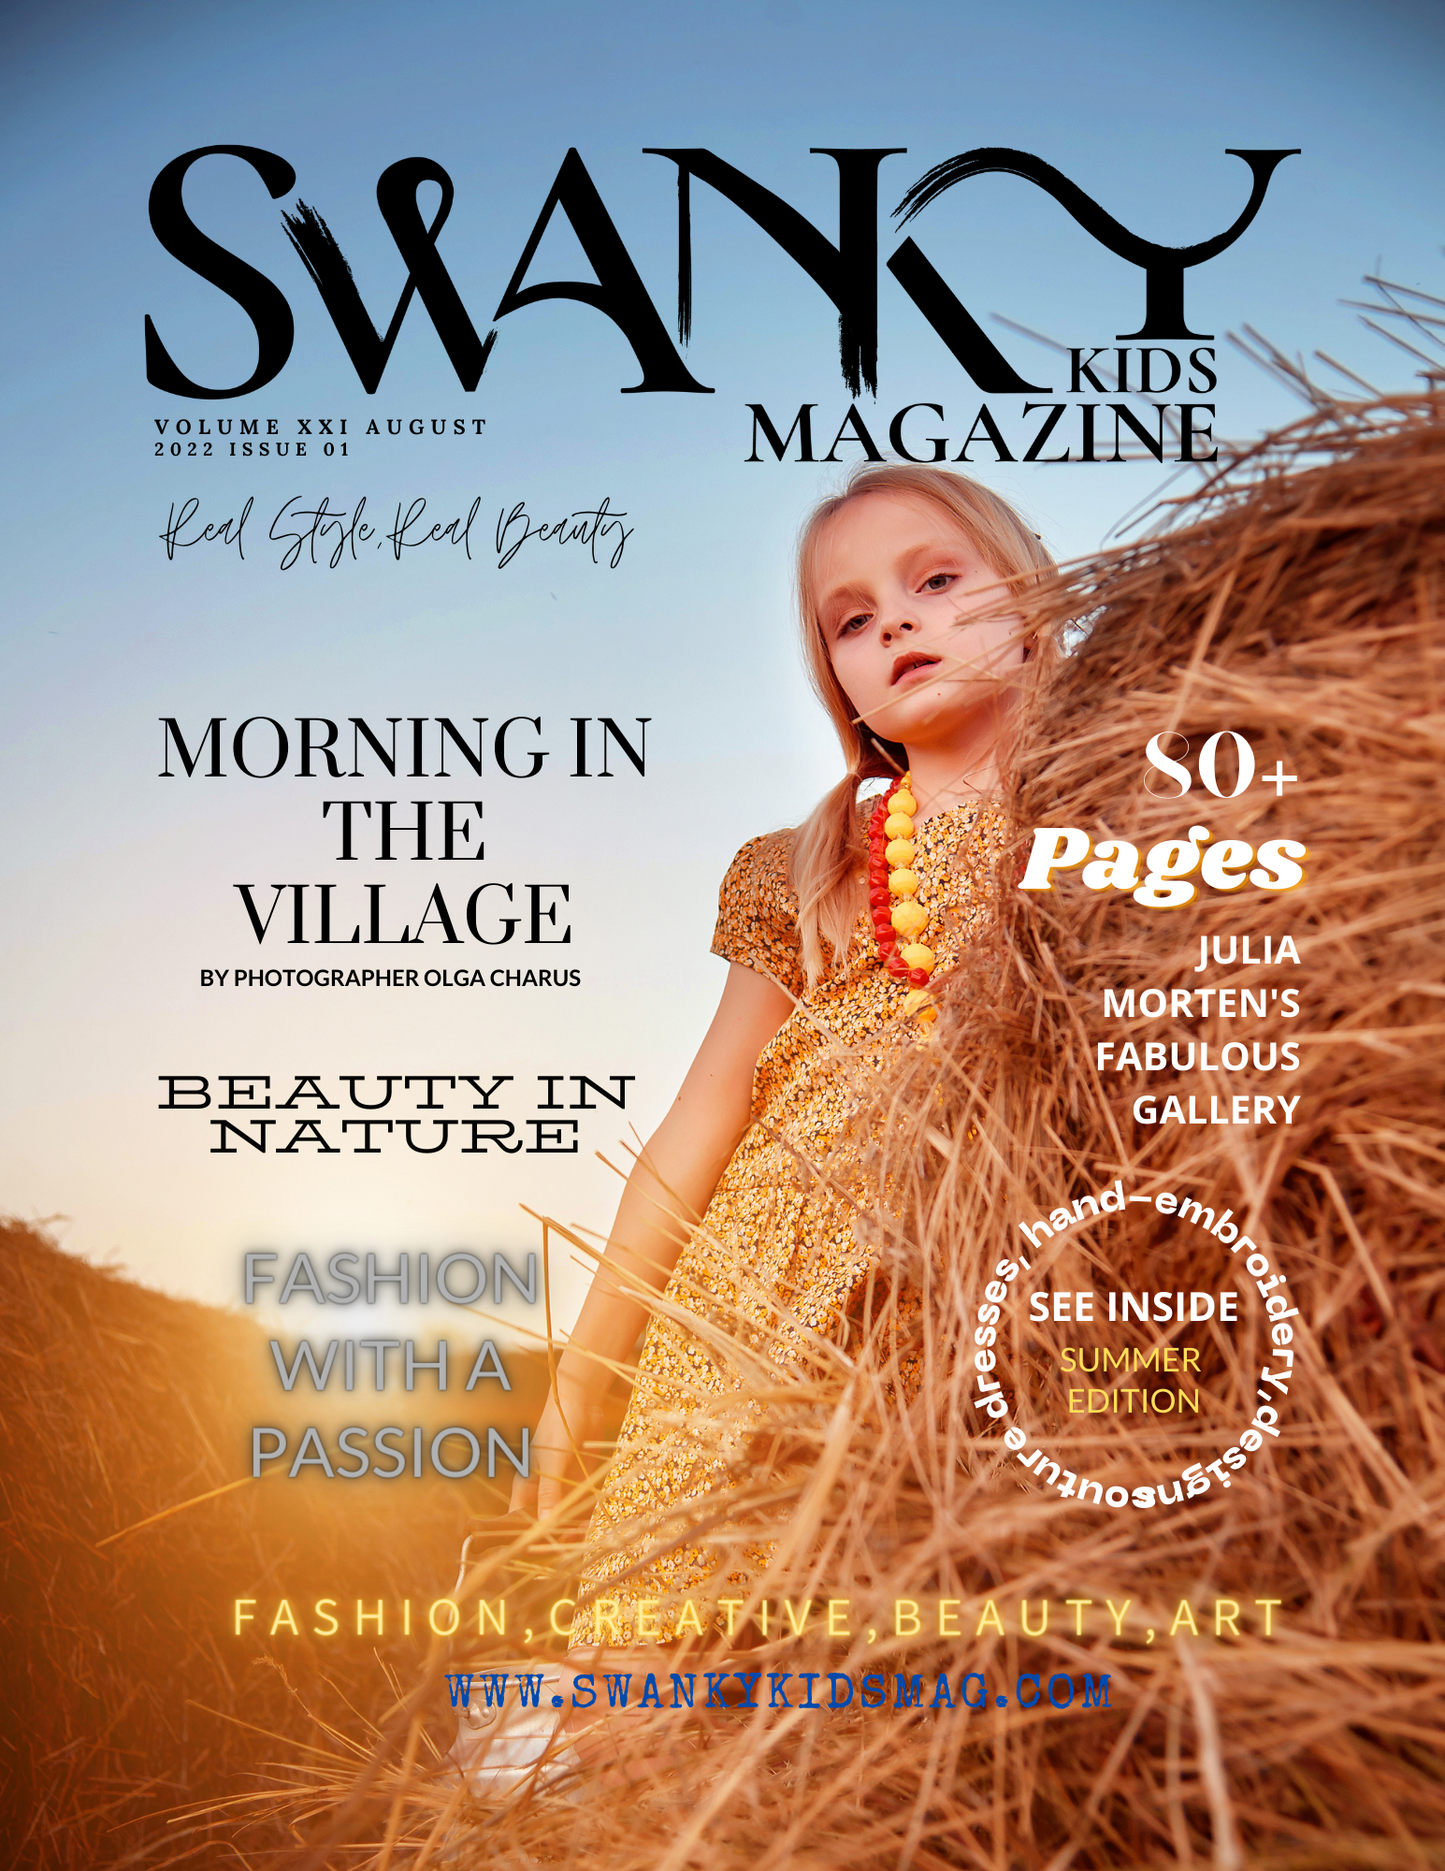 Swanky Kids Magazine AUGUST 2022 VOL XXI Issue 1